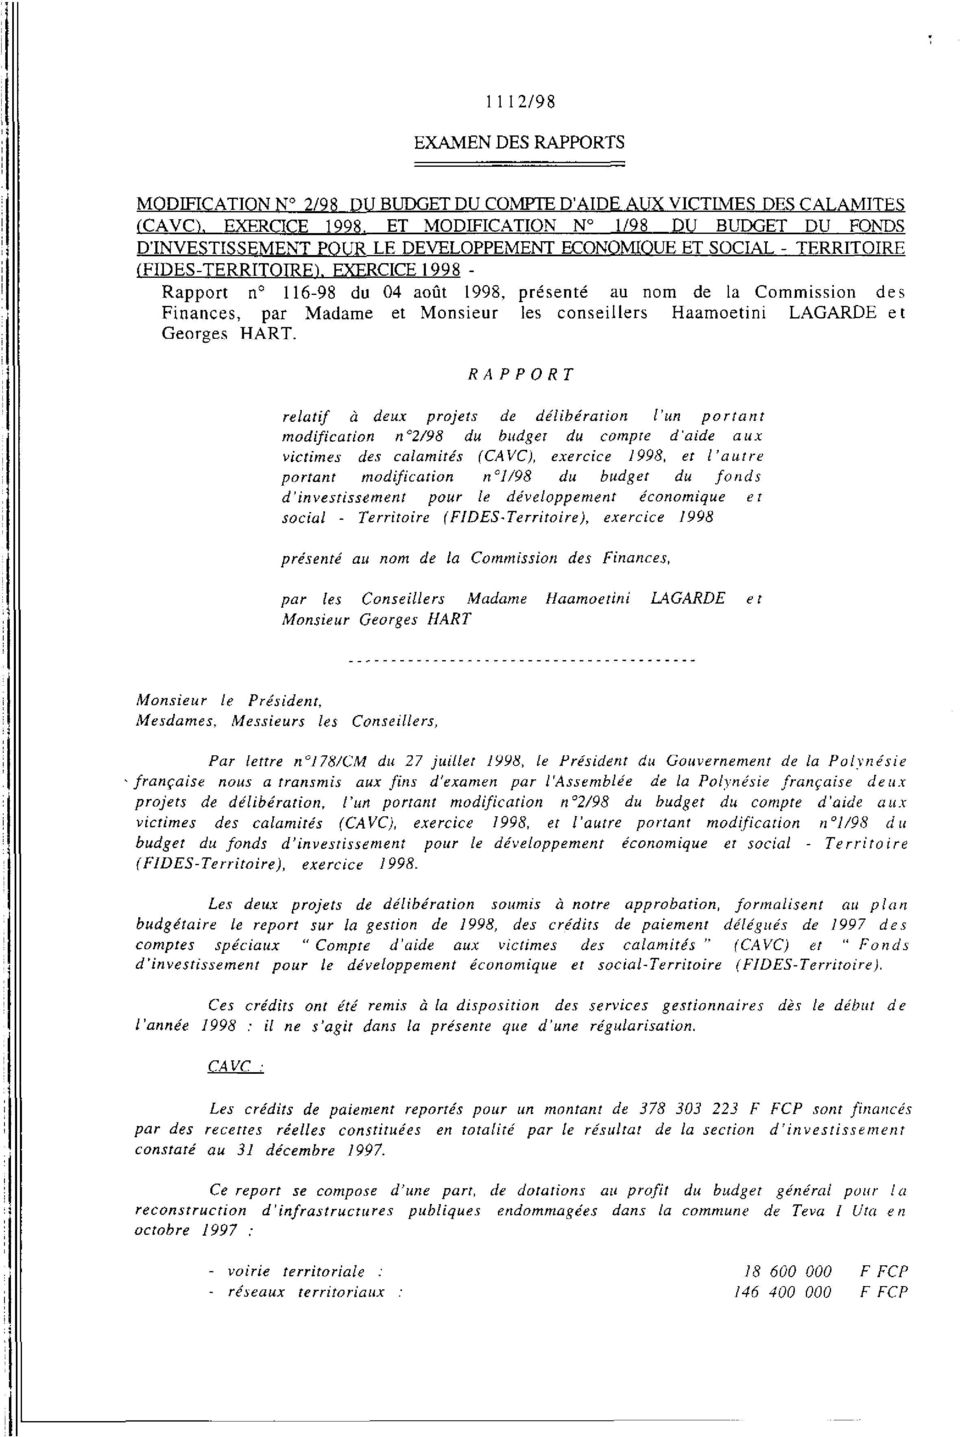 EXERCICE 1998 - Rapport n 116-98 du 4 août 1998, présenté au nom de la Commission des Finances, par Madame et Monsieur les conseillers Haamoetini LAGARDE e t Georges HART.